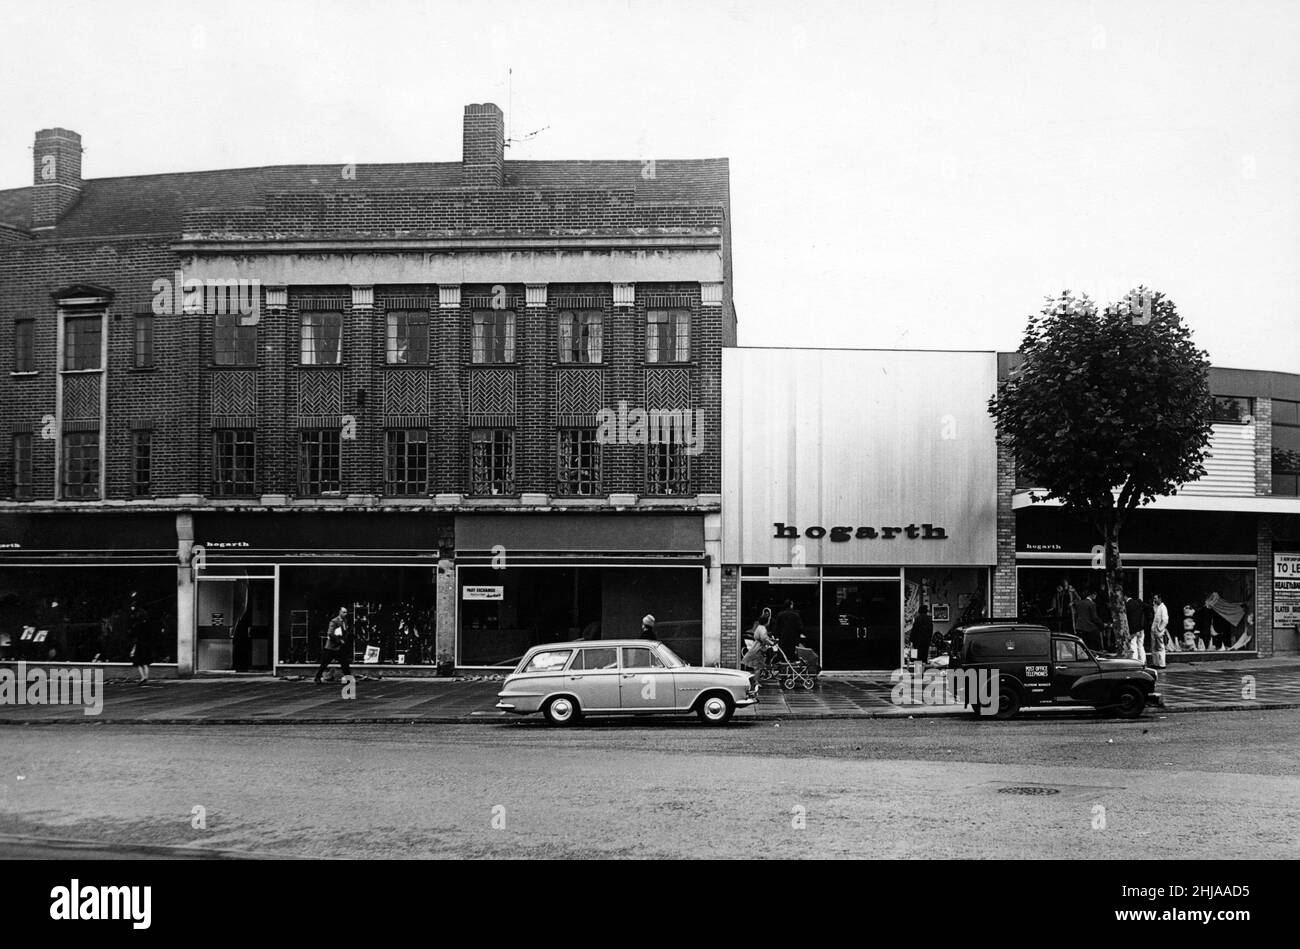 Die neuen Räumlichkeiten für Hogarth Stores Ltd in Walsgrave Road, Coventry, zeigen, wie die Modernisierung mit dem Neuen und dem Alten verschmolzen ist. Links vom Haupteingang befindet sich der alte Teil, der umgebaut wurde, um mit dem neuen Gebäude rechts zu harmonisieren. 3rd. Oktober 1963 Stockfoto